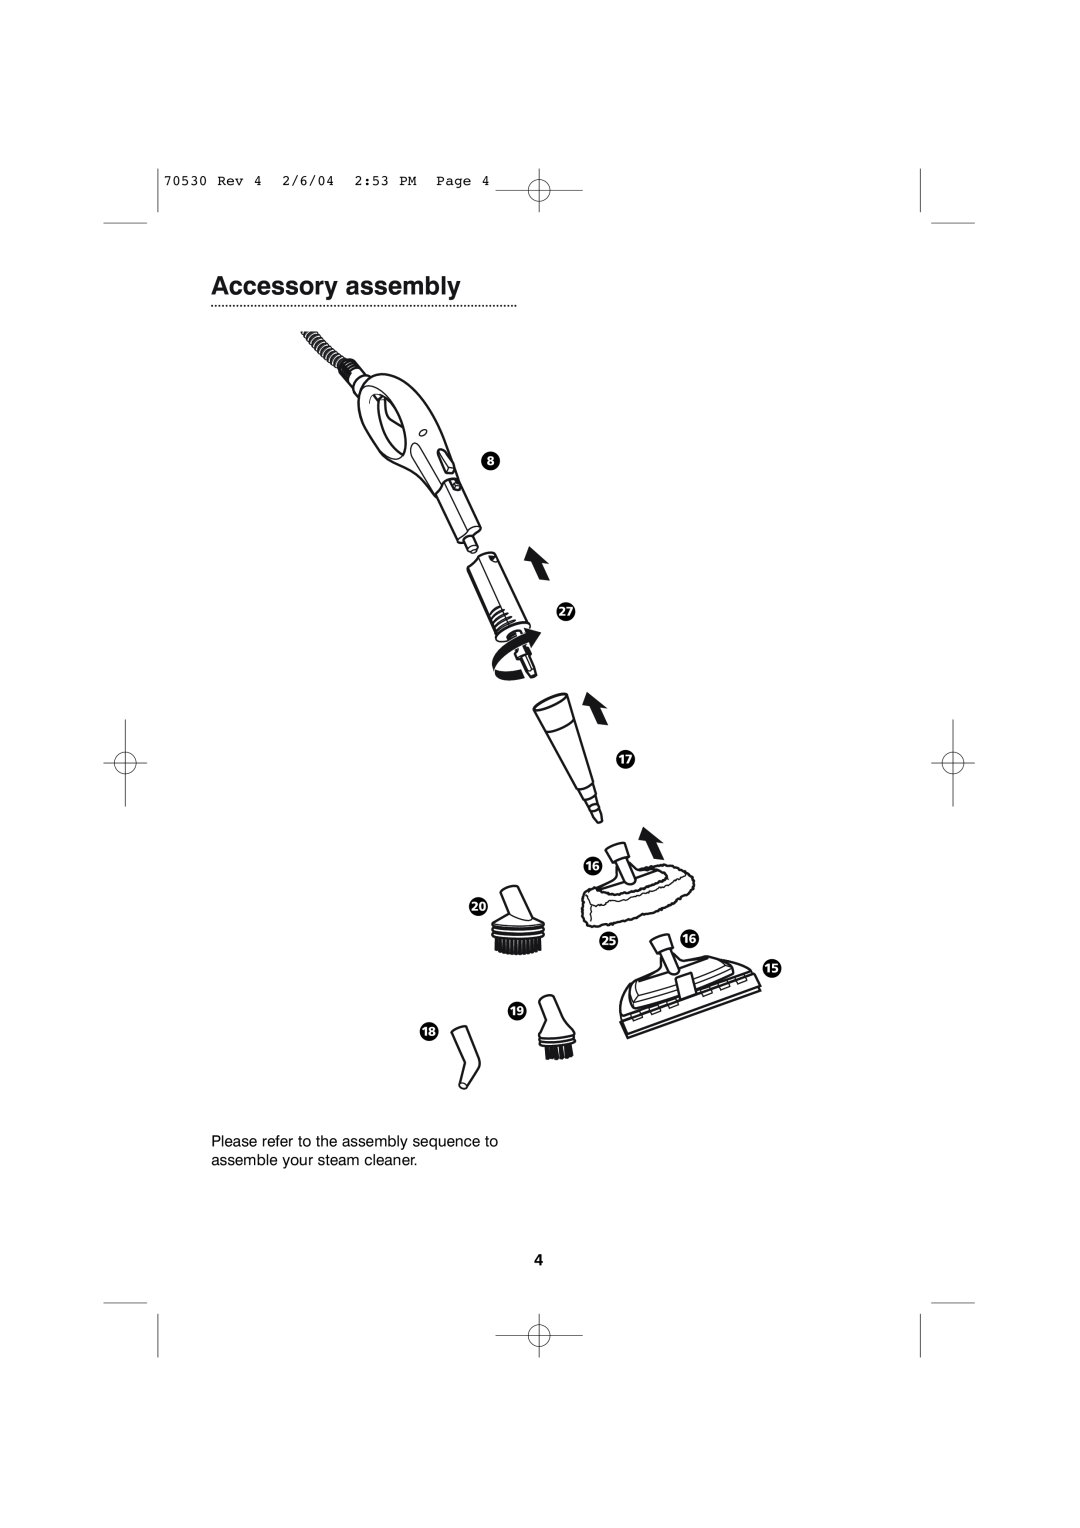 Morphy Richards Steam cleaner quick start Accessory assembly, · Ù Í È Ì Ú È Ë Ï Î, Rev 4 2/6/04 2:53 PM Page 